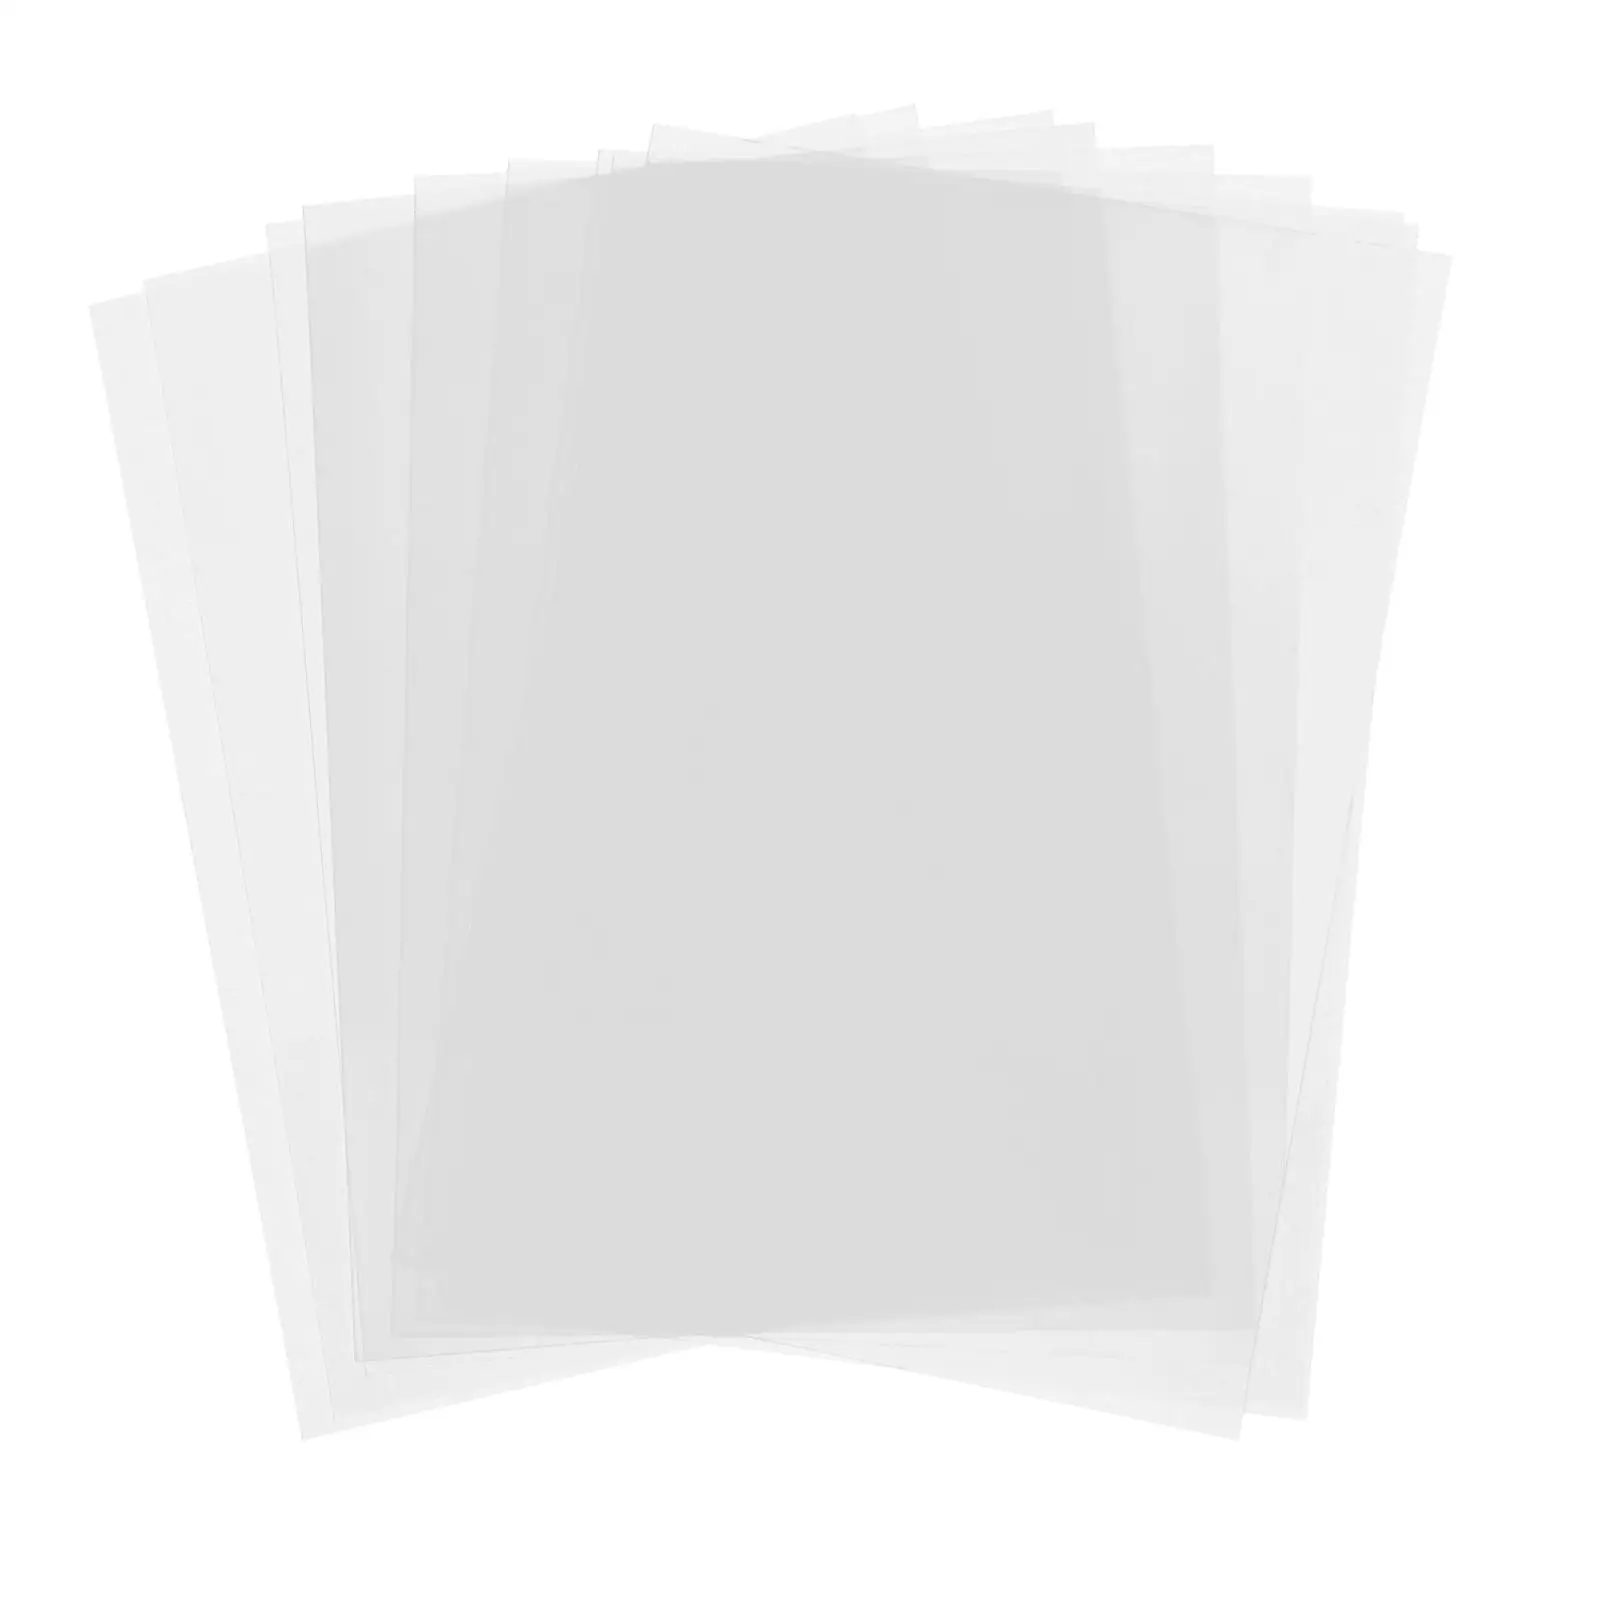 10 Shrink Sheets DIY Crafts to Make Blank Foil Paper Printable